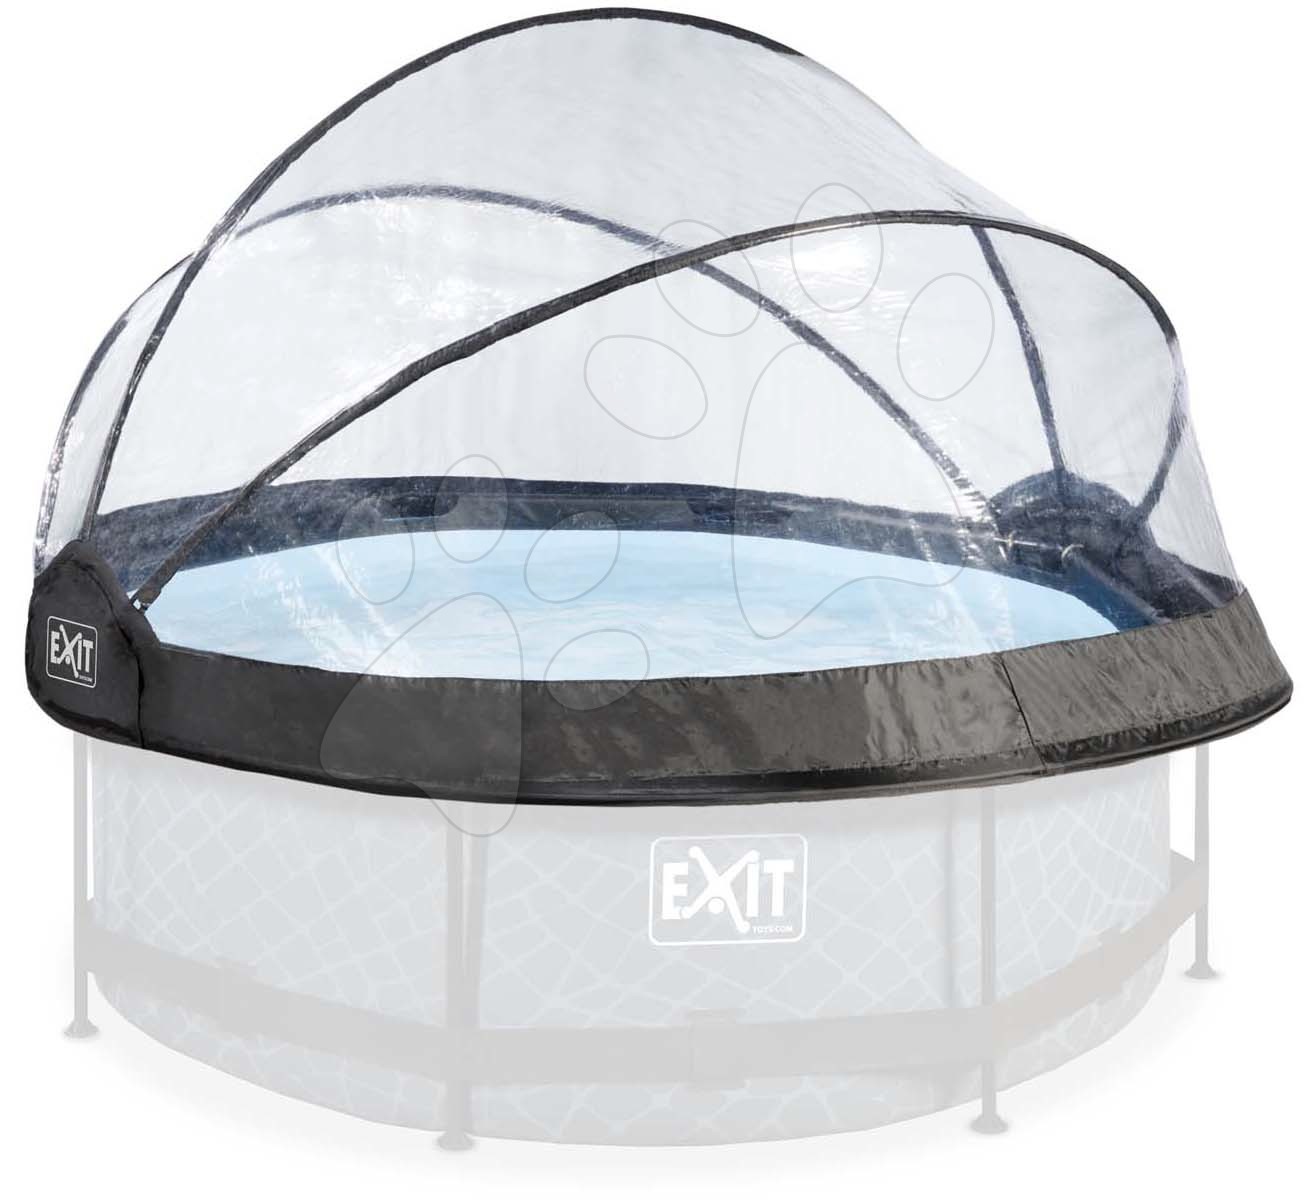 Zastřešení bazénů - Kryt kopule pool cover Exit Toys na bazény o průměru 244 cm od 6 let